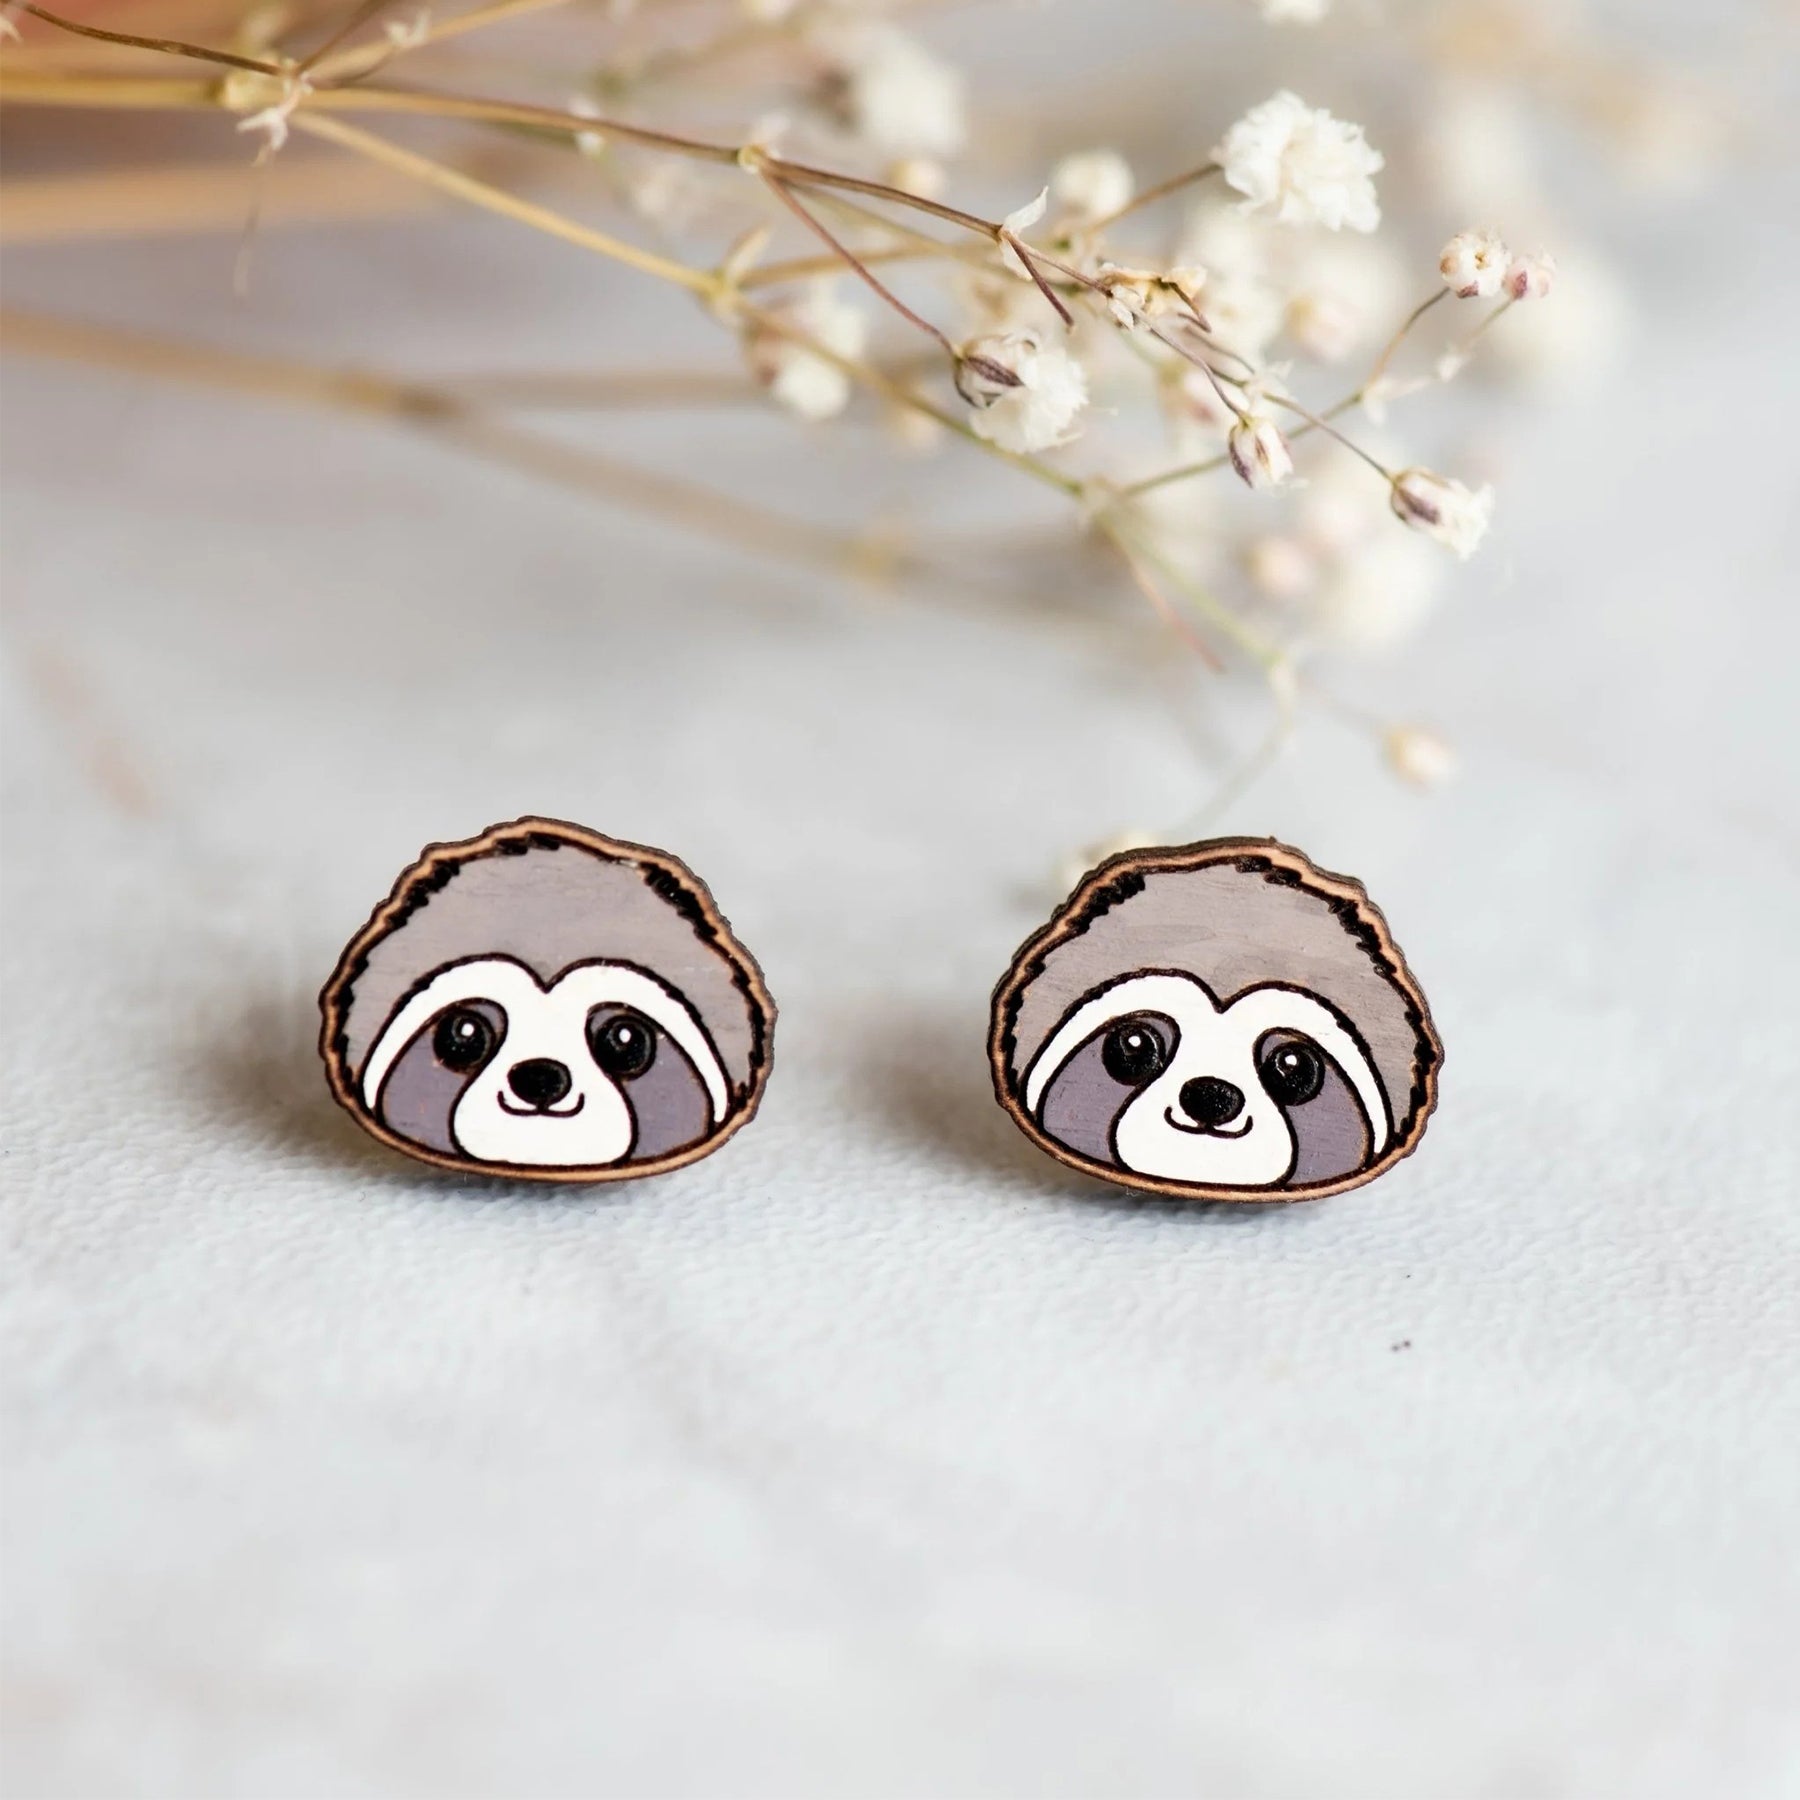 Sloth hand-painted wood stud earrings